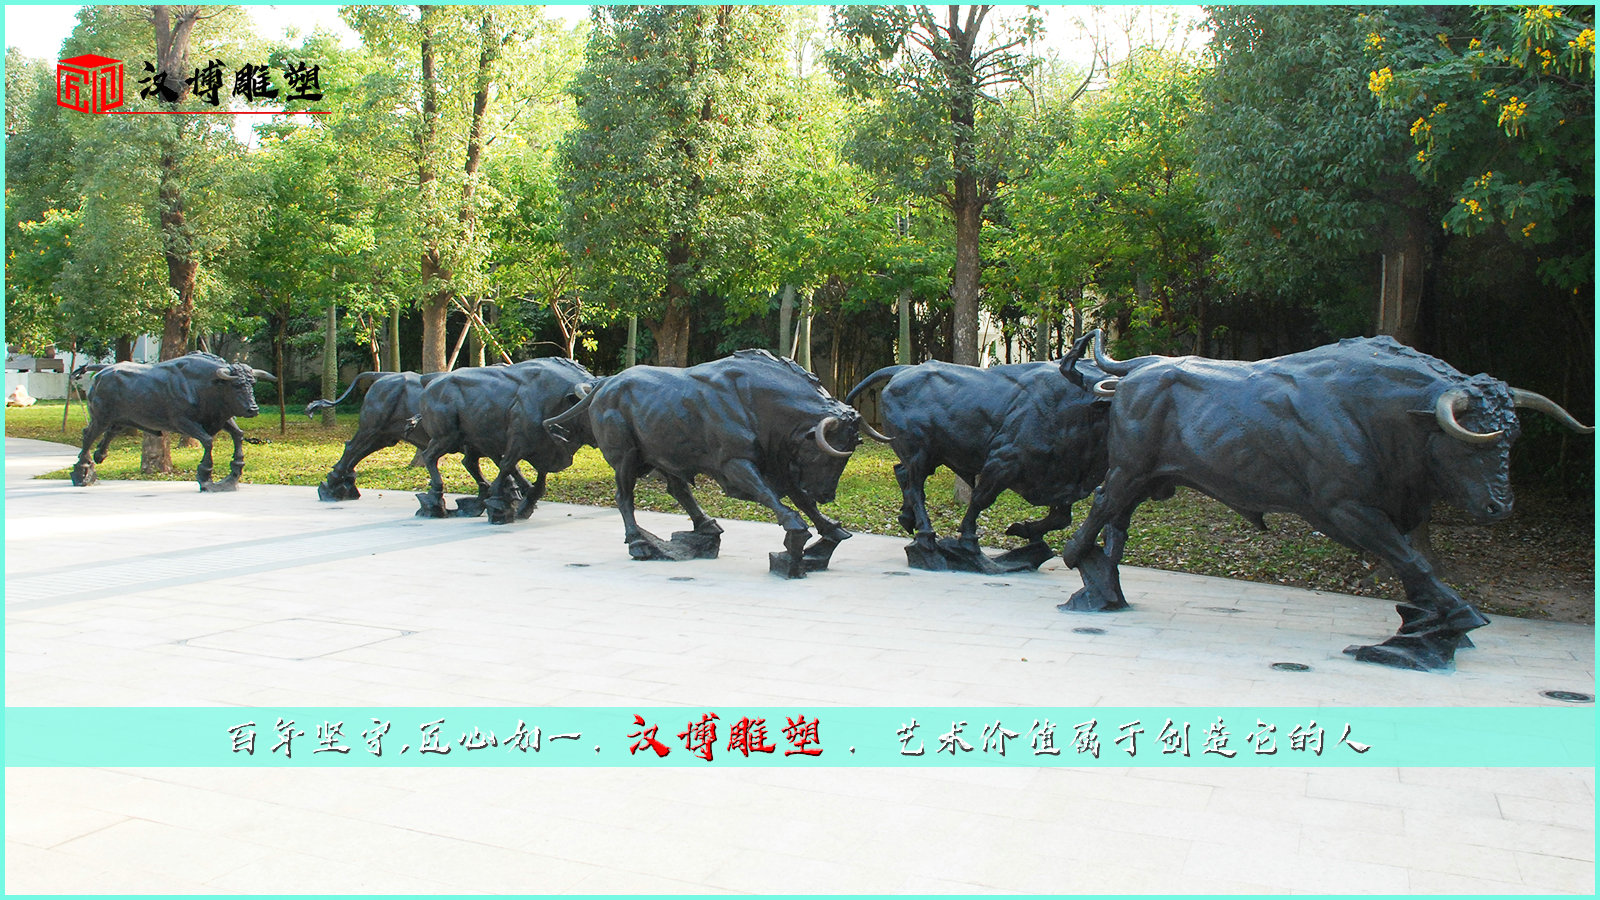 牛铜雕,群牛雕像,公园景观雕塑